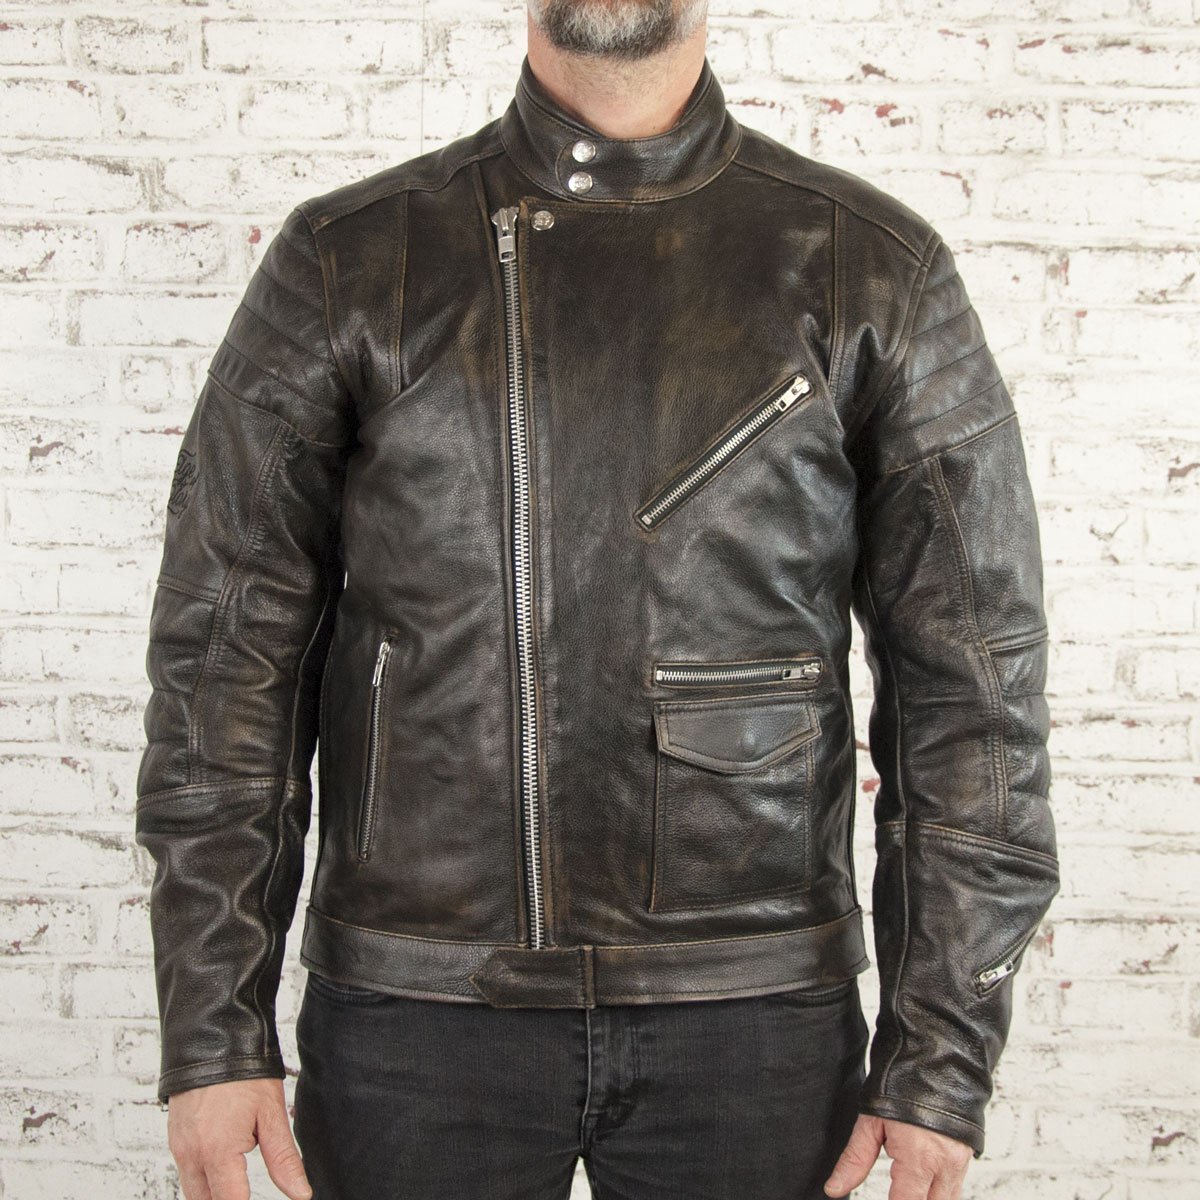 Age of Glory - Age of Glory Rocker Black Leather Jacket - Men's Jackets - Salt Flats Clothing